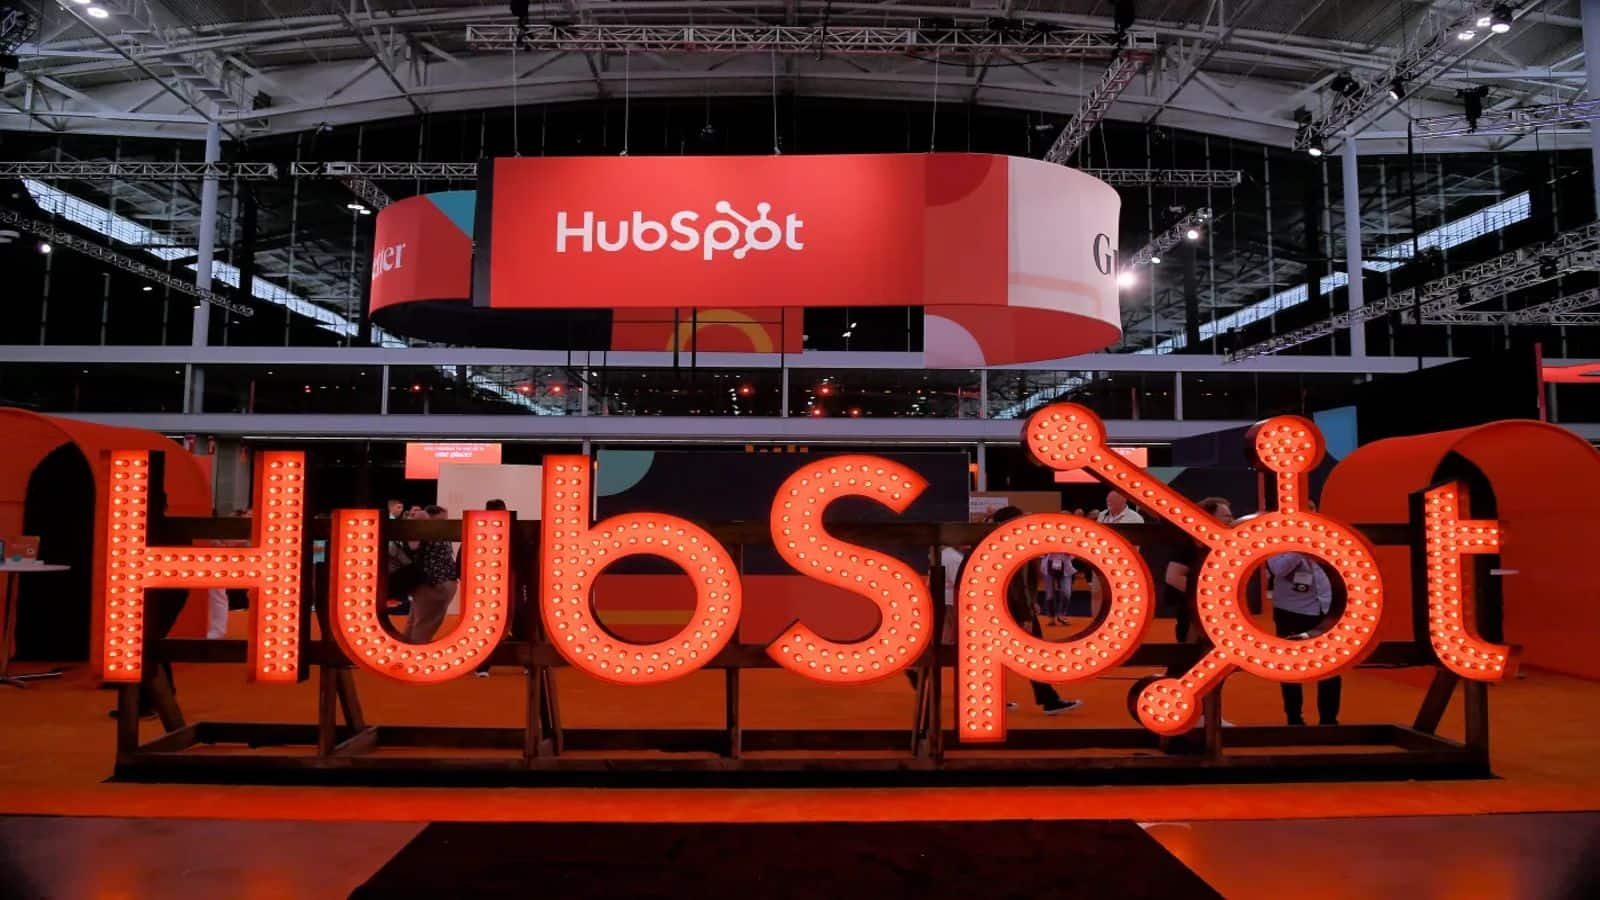 Google parent considers acquiring marketing software firm HubSpot